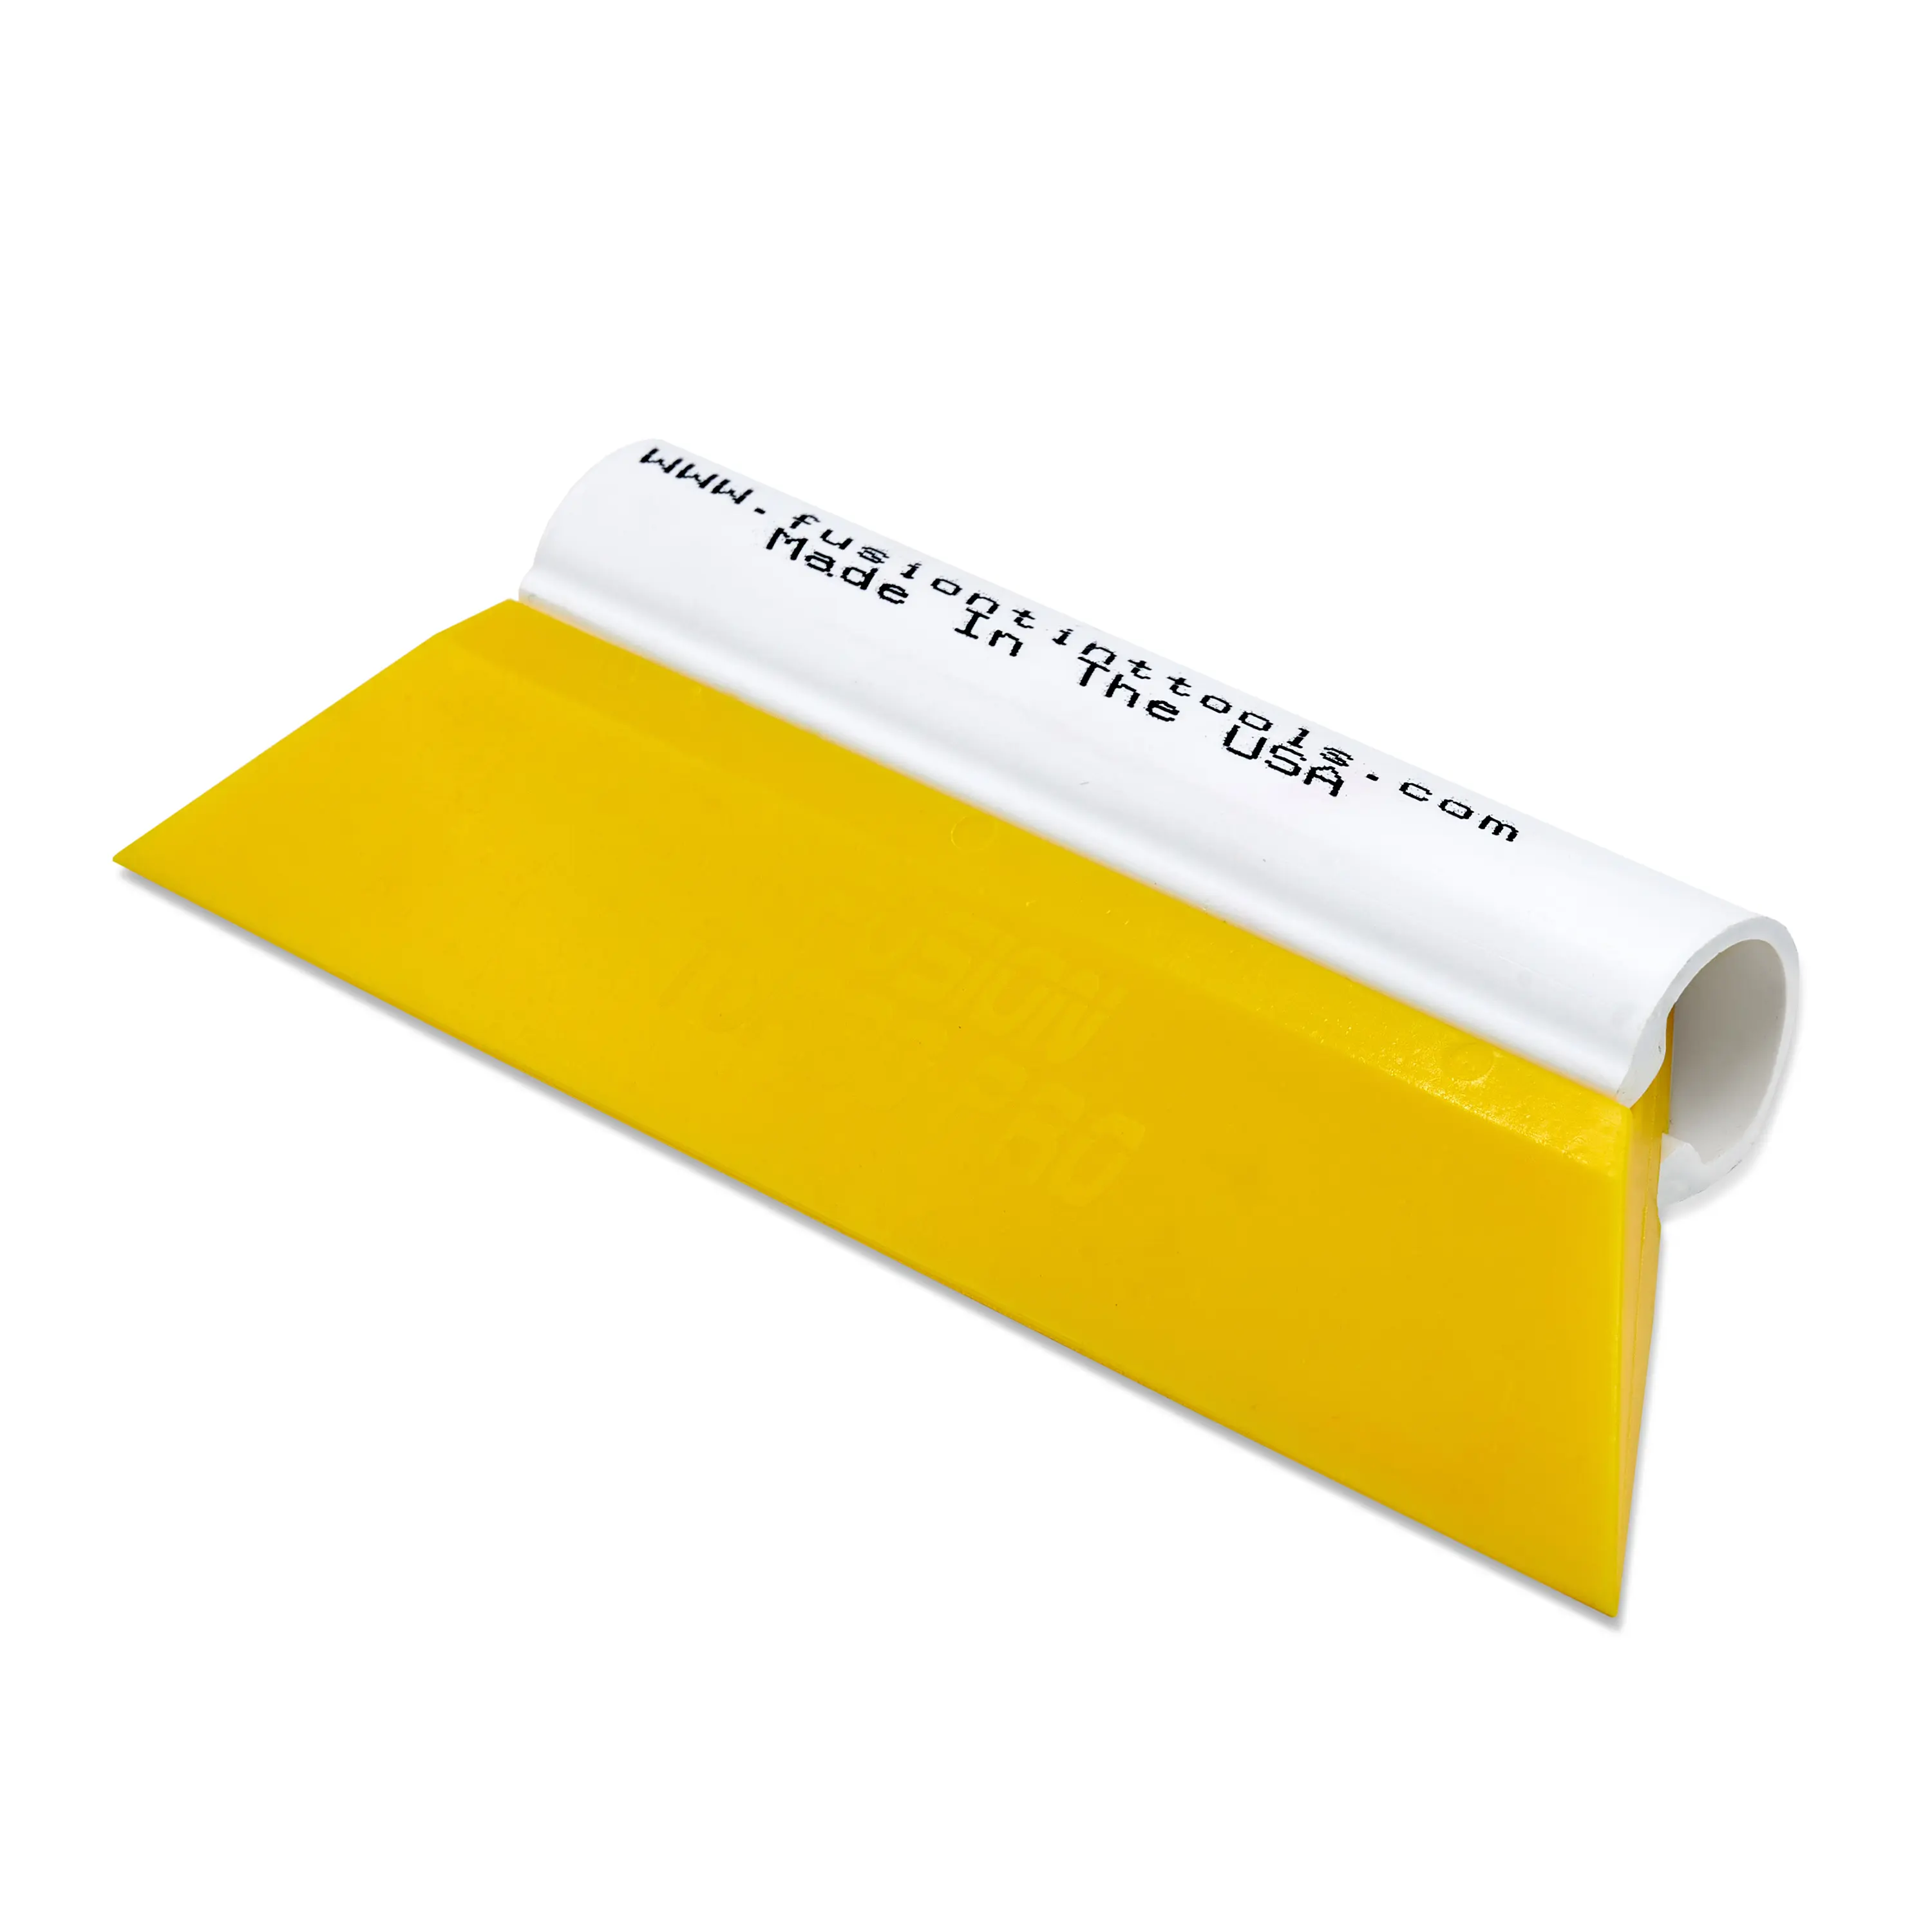 Выгонка FUSION TURBO PRO желтая с пластиковой ручкой, 14 см.